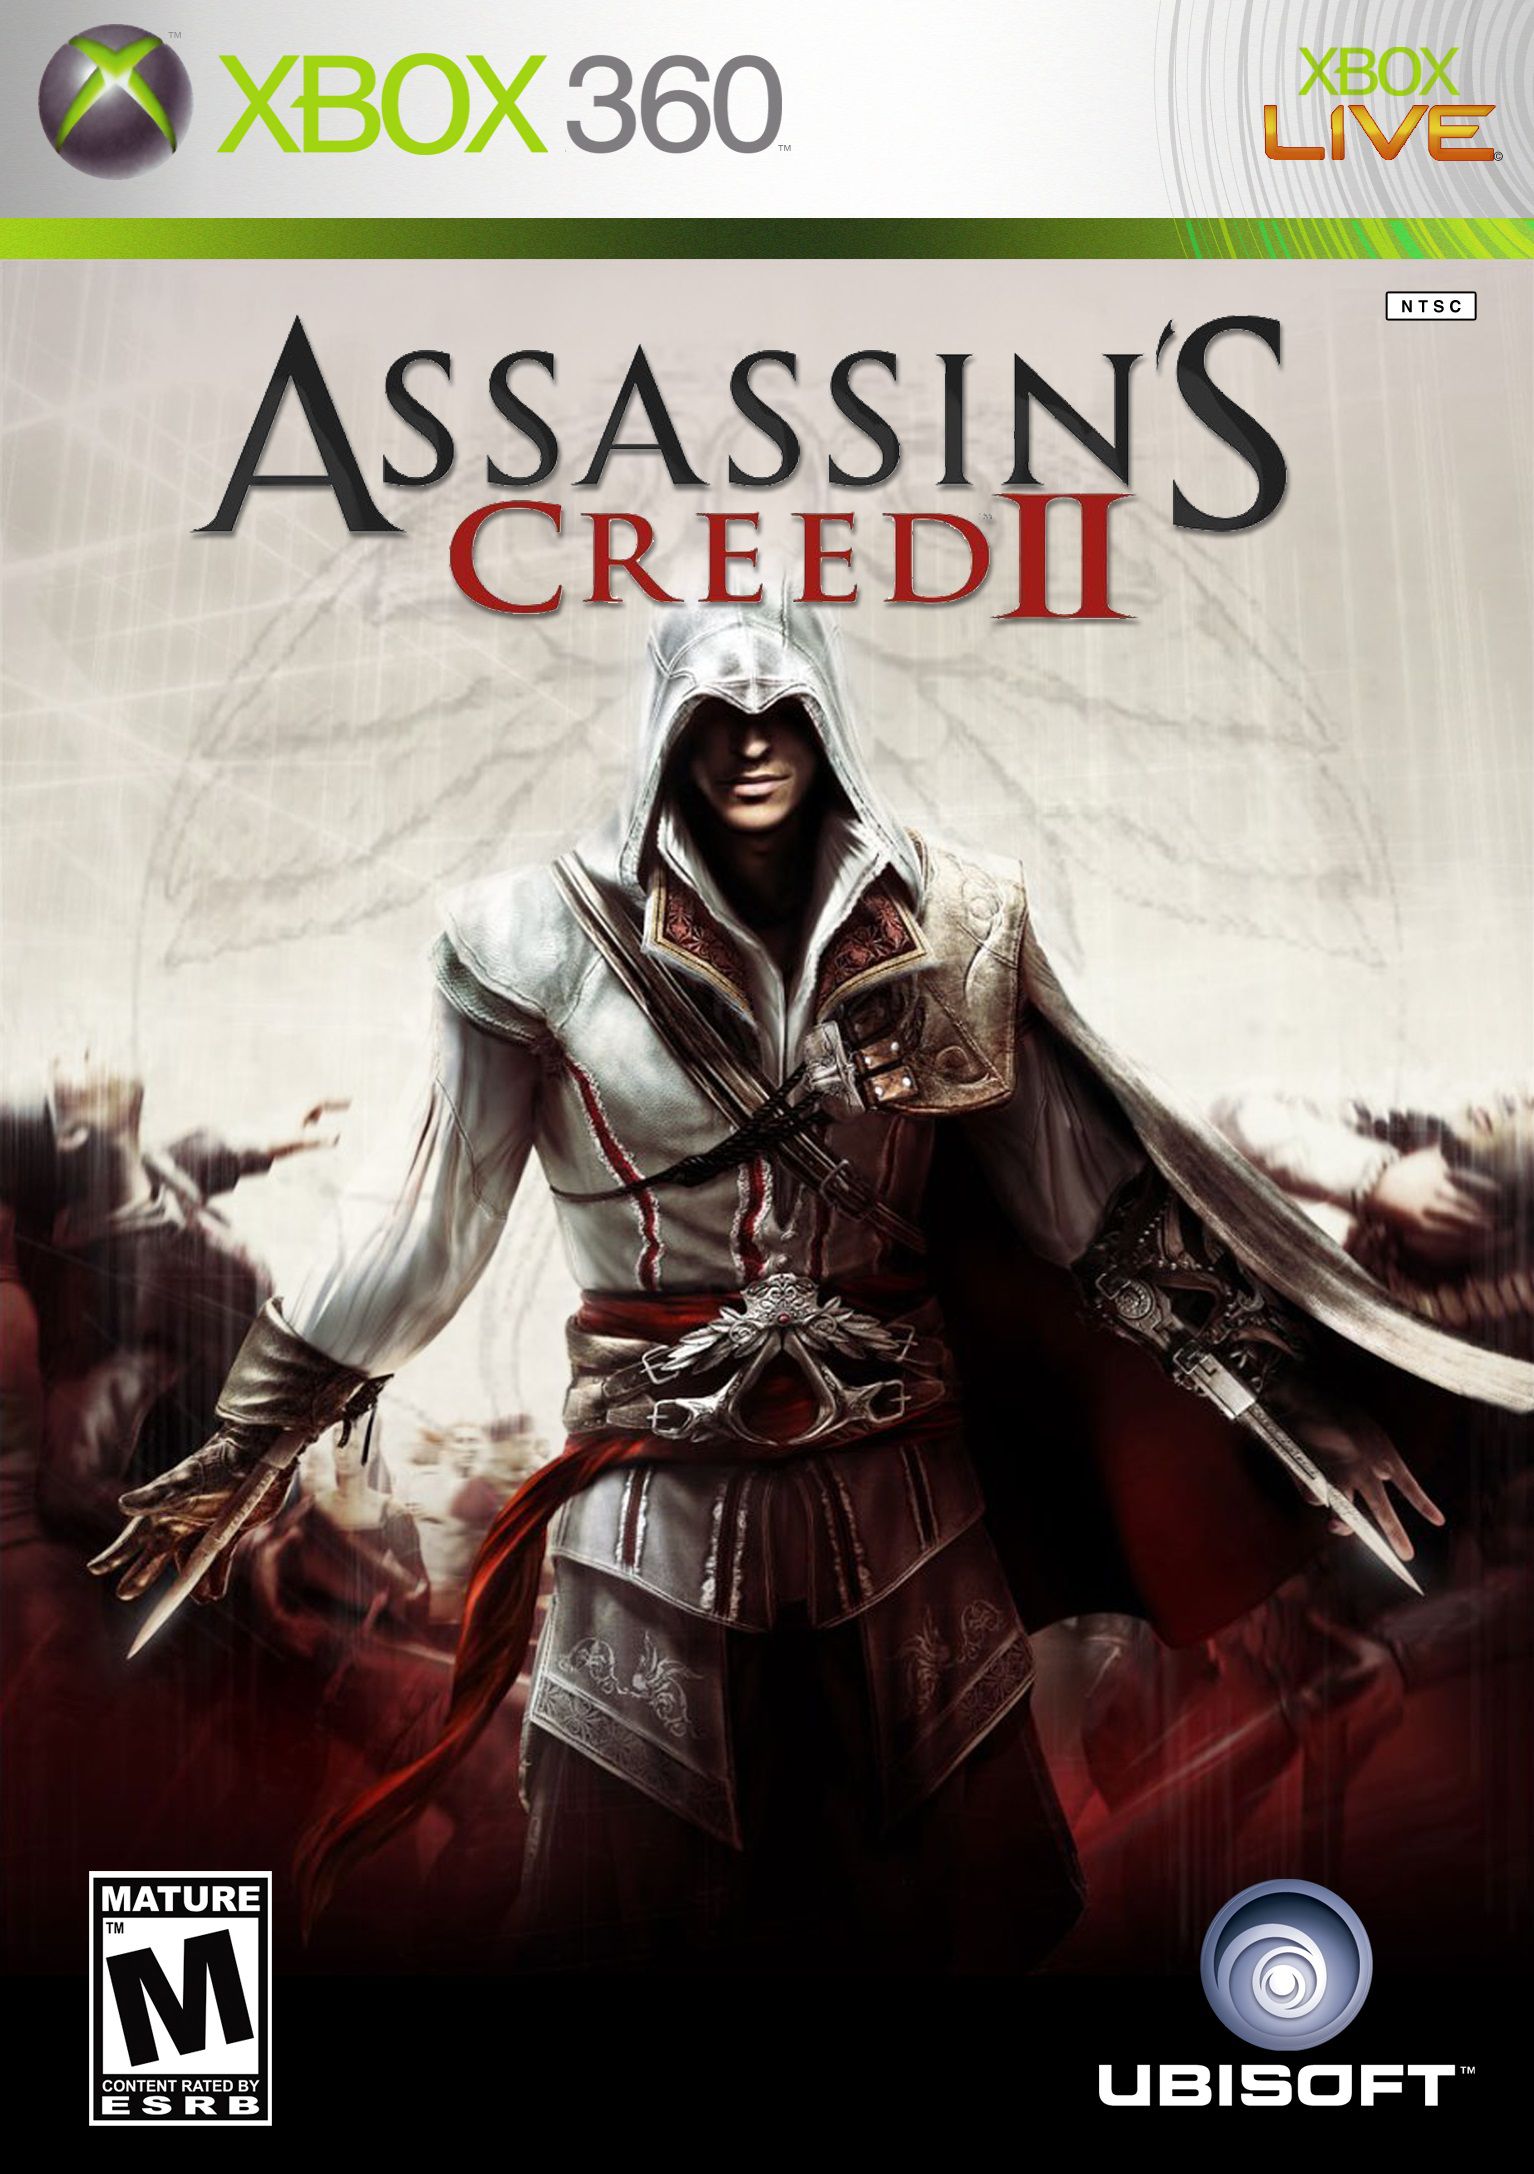 Assassins Creed 2 Midia Digital [XBOX 360] - WR Games Os melhores